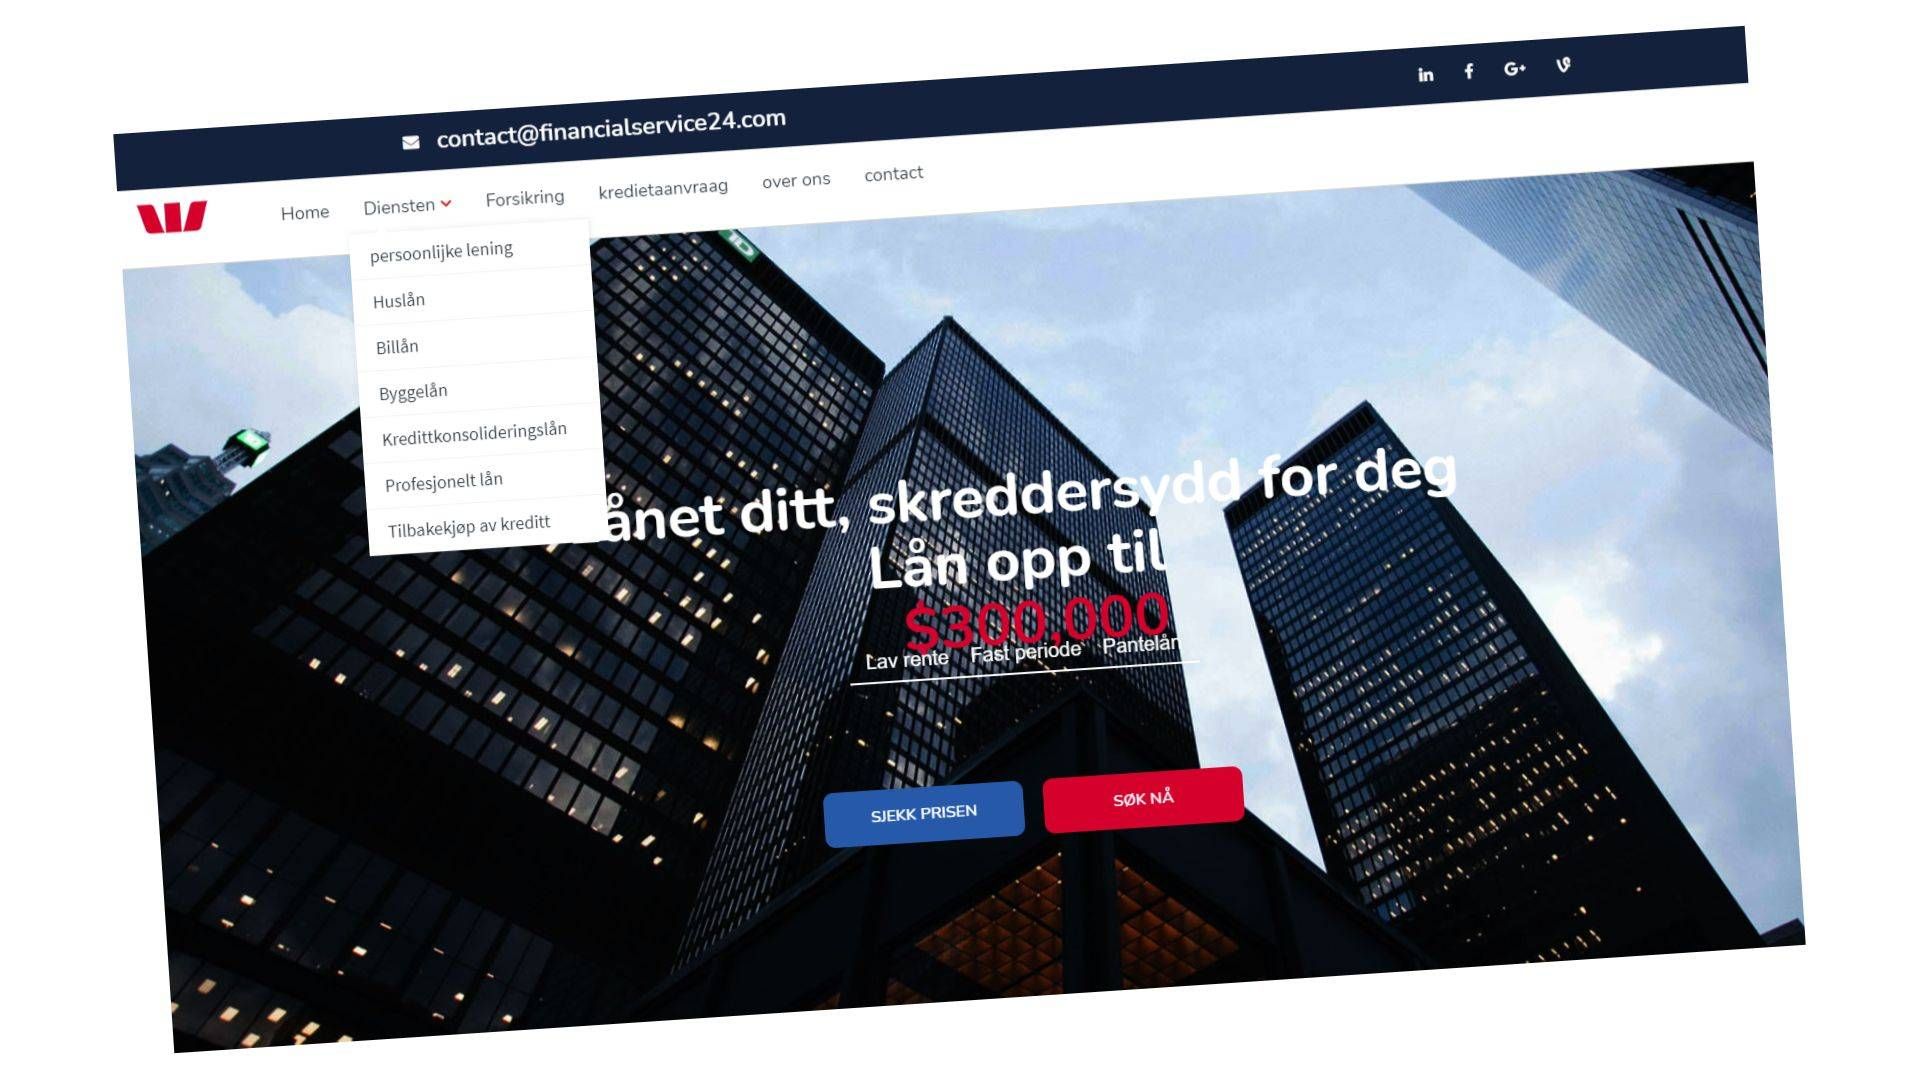 Nettsiden til Financialservice24 er et sammensurium av norsk og nederlandsk tekst. | Foto: Skjermbilde: Financialservice24.com